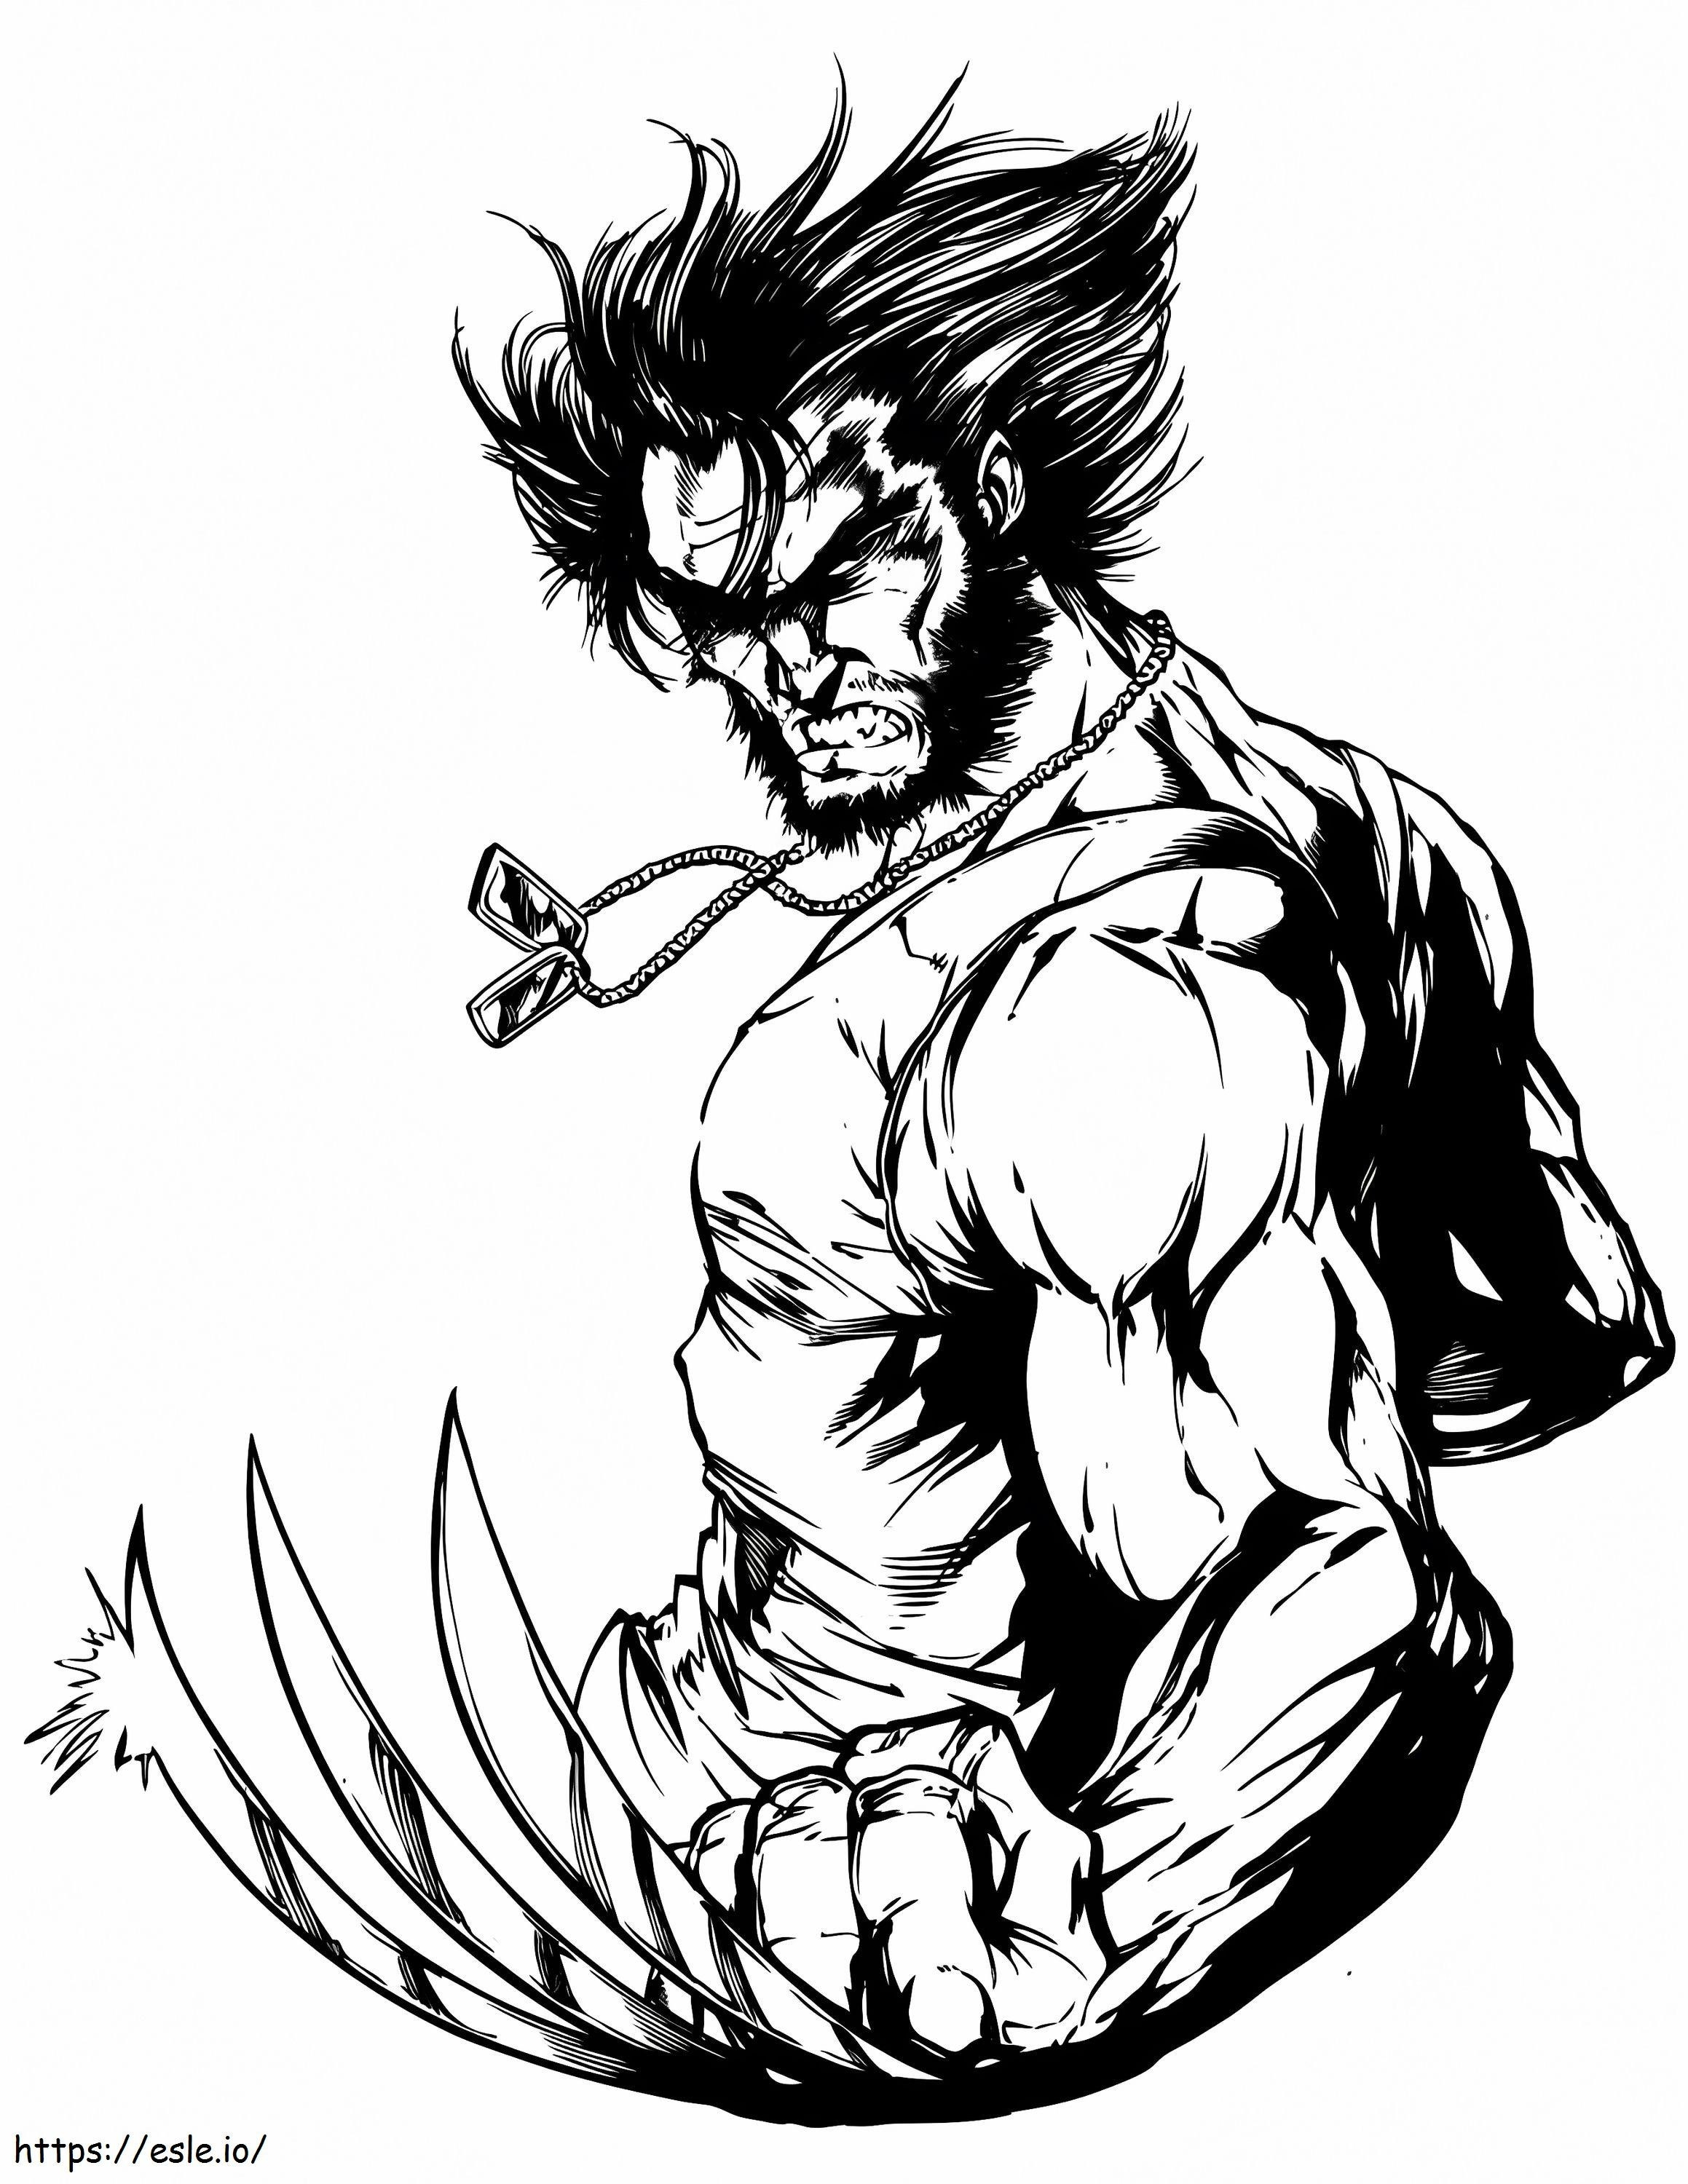 Wolverine sembra arrabbiato da colorare